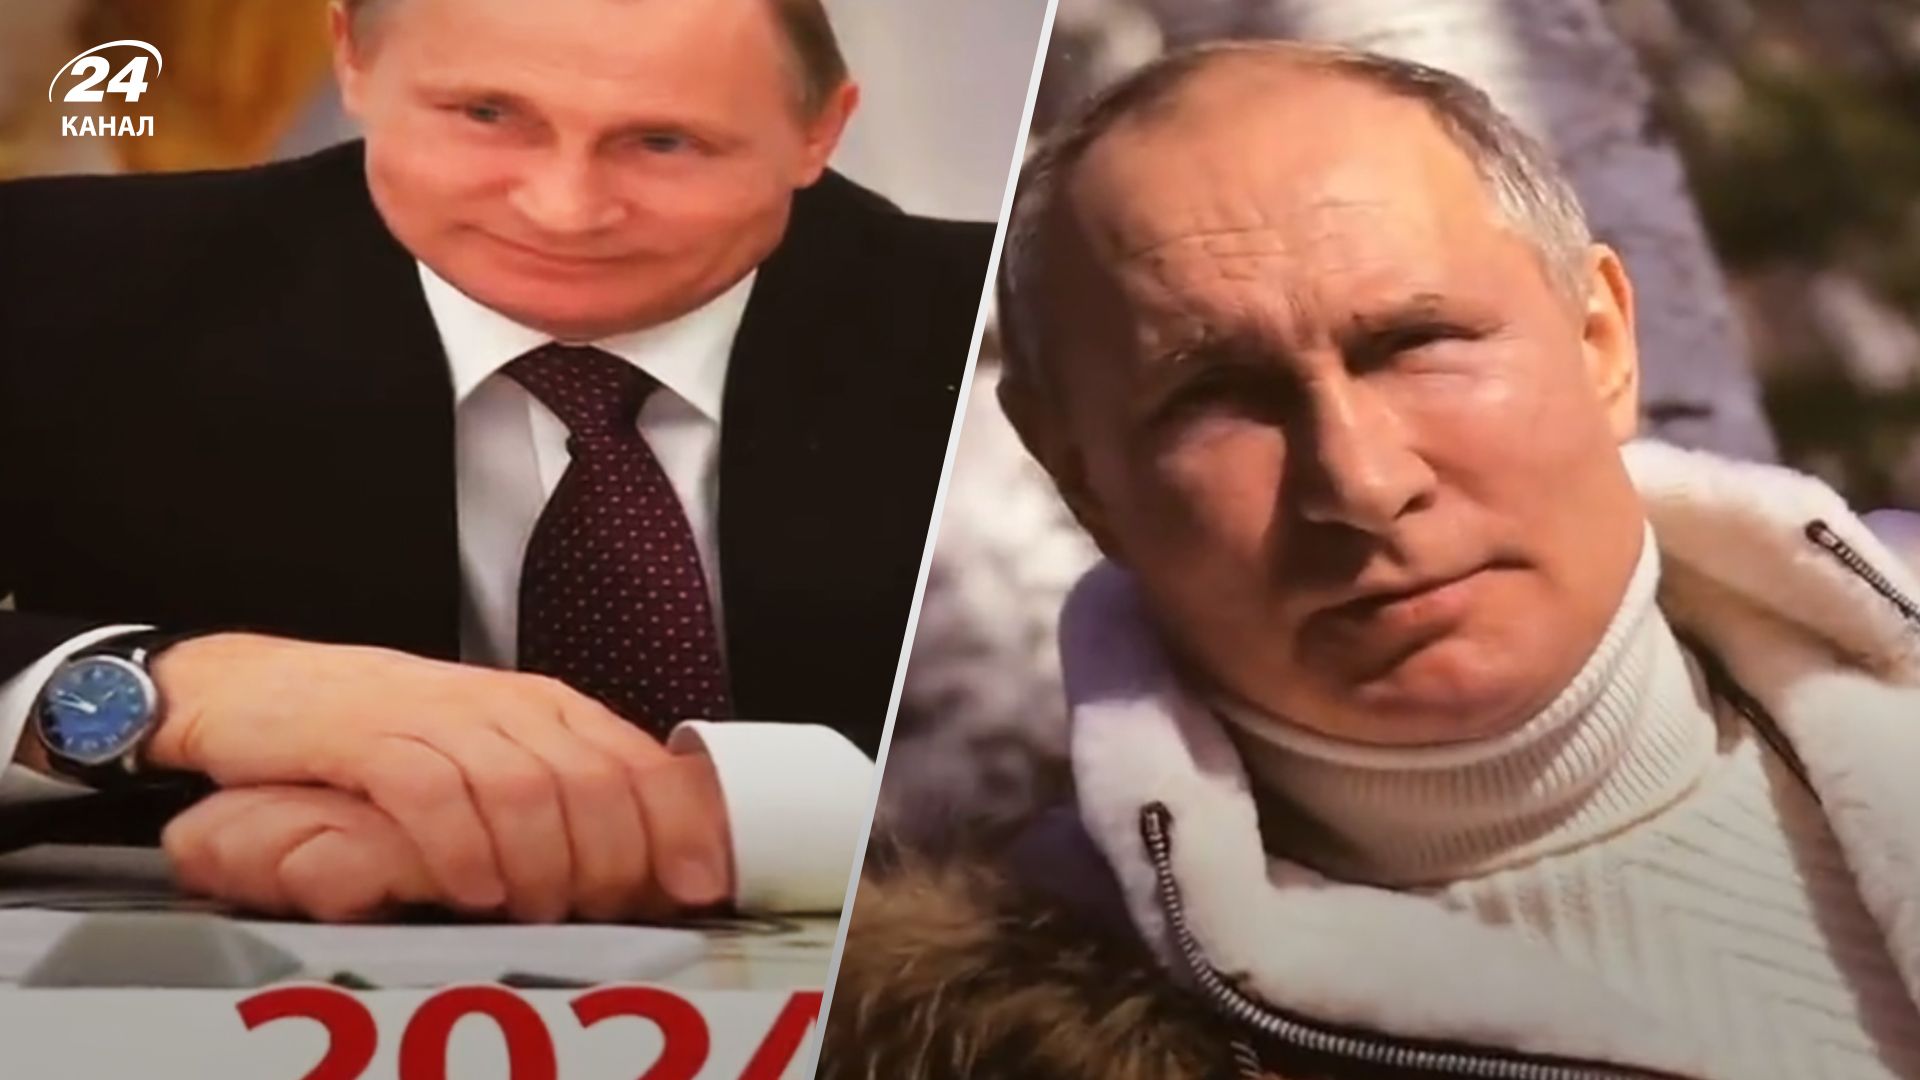 Володимир Путін хворий - канлендар з президентом Росії на 2024 рік підігрів ці чутки